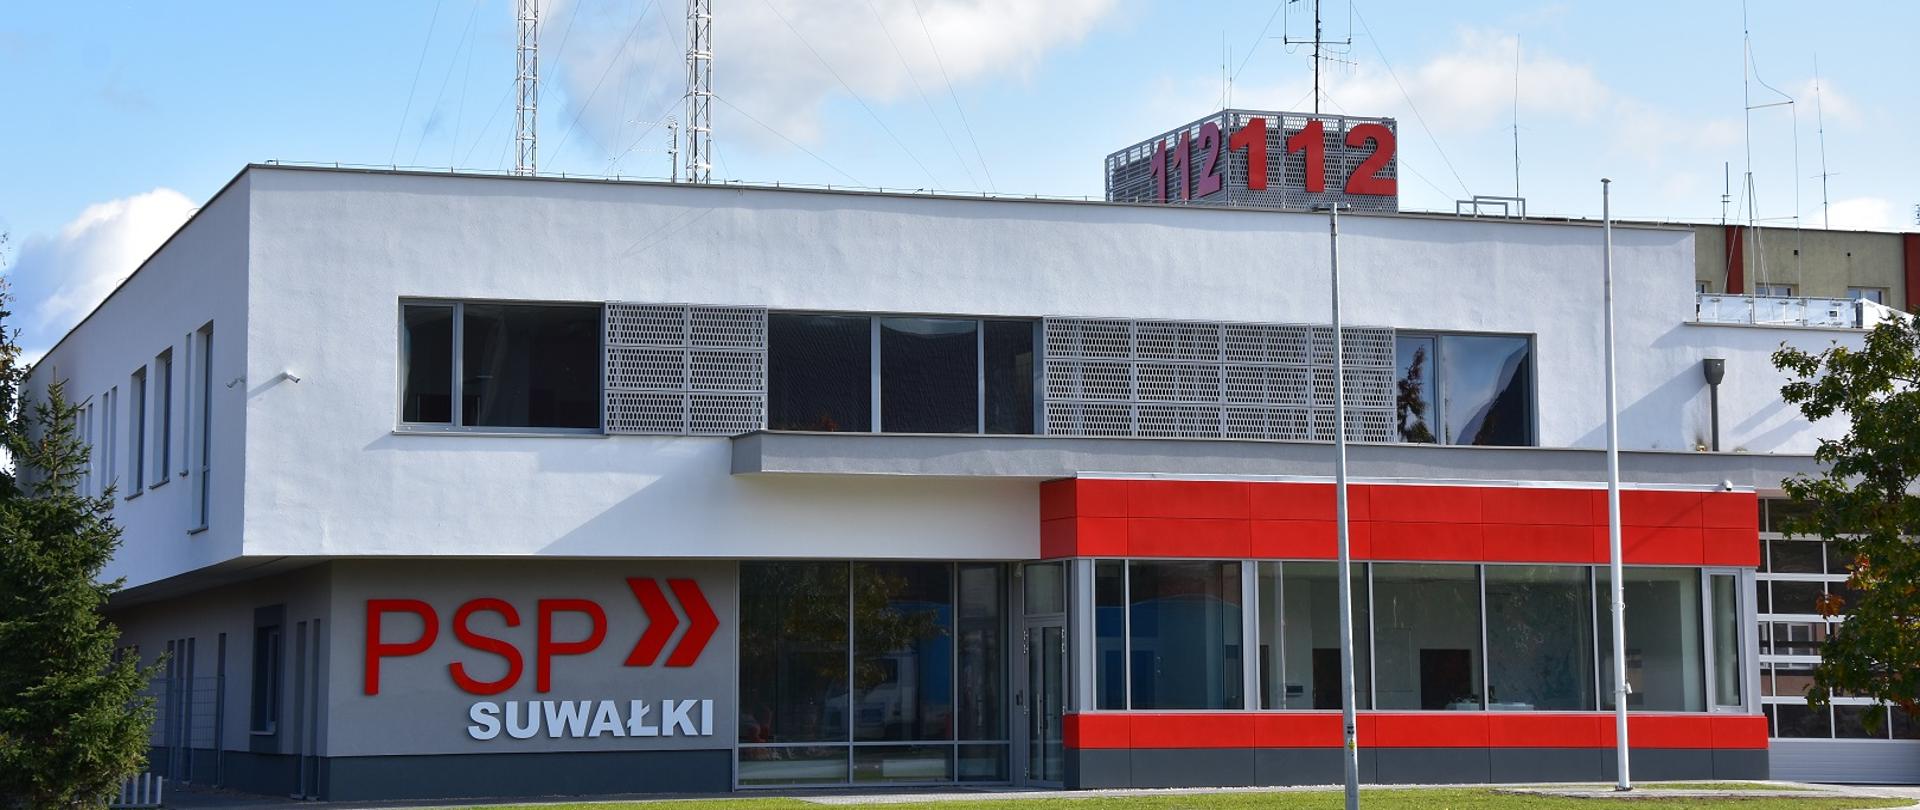 Zdjęcie obrazuje budynek KM PSP w Suwałkach